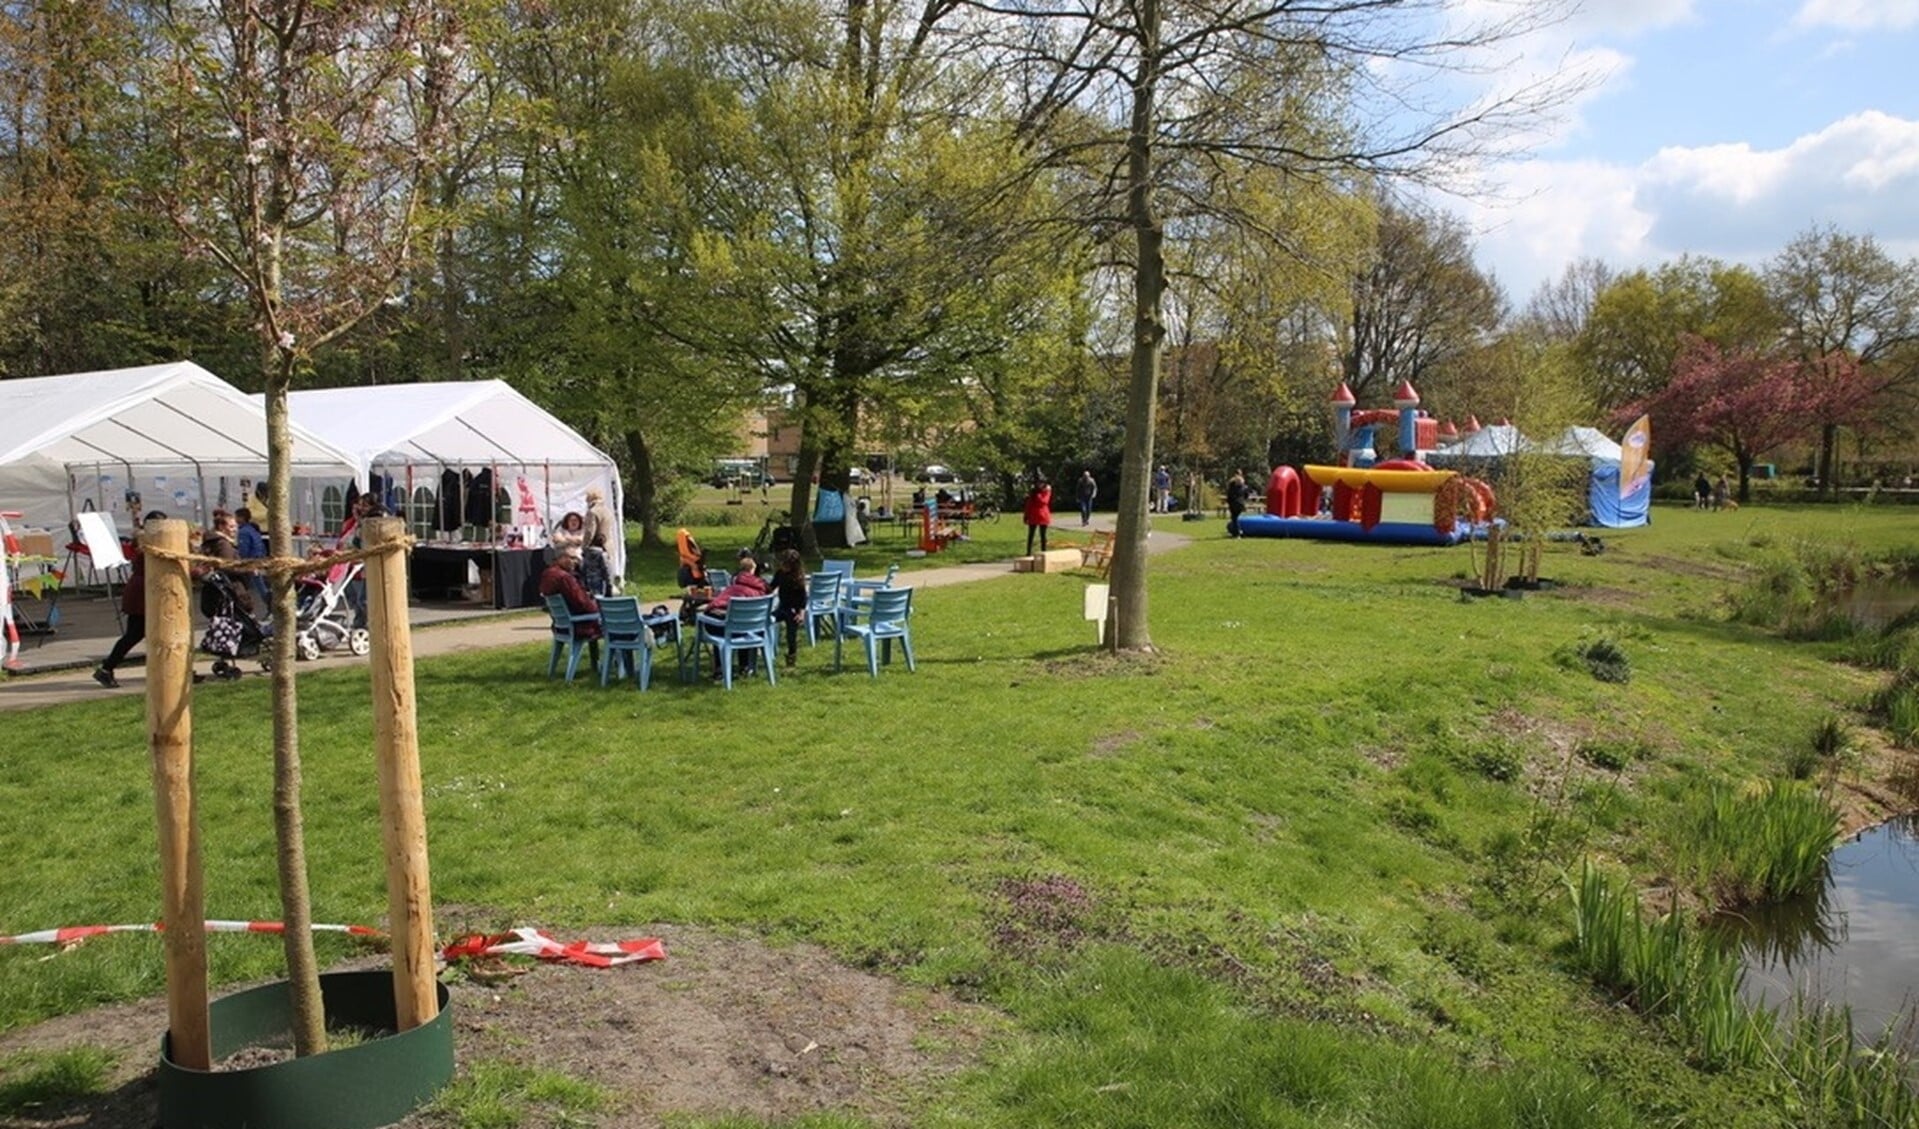 Activiteiten in Park 't Loo tijdens Fenomeen Bovenveen (archieffoto Atte Roskam).